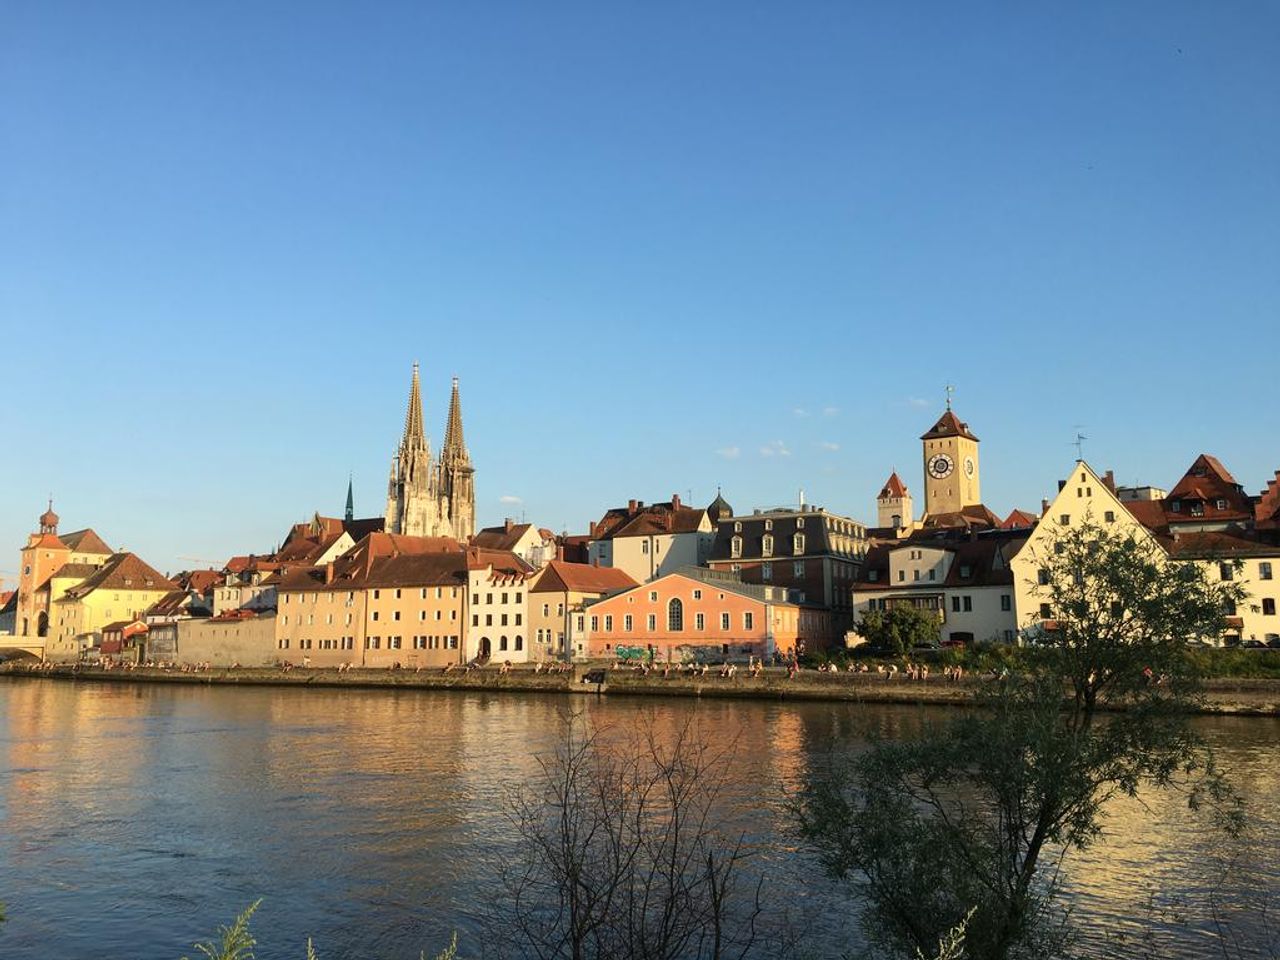 Strudelfahrt auf der Donau - 2 Tage in Regensburg